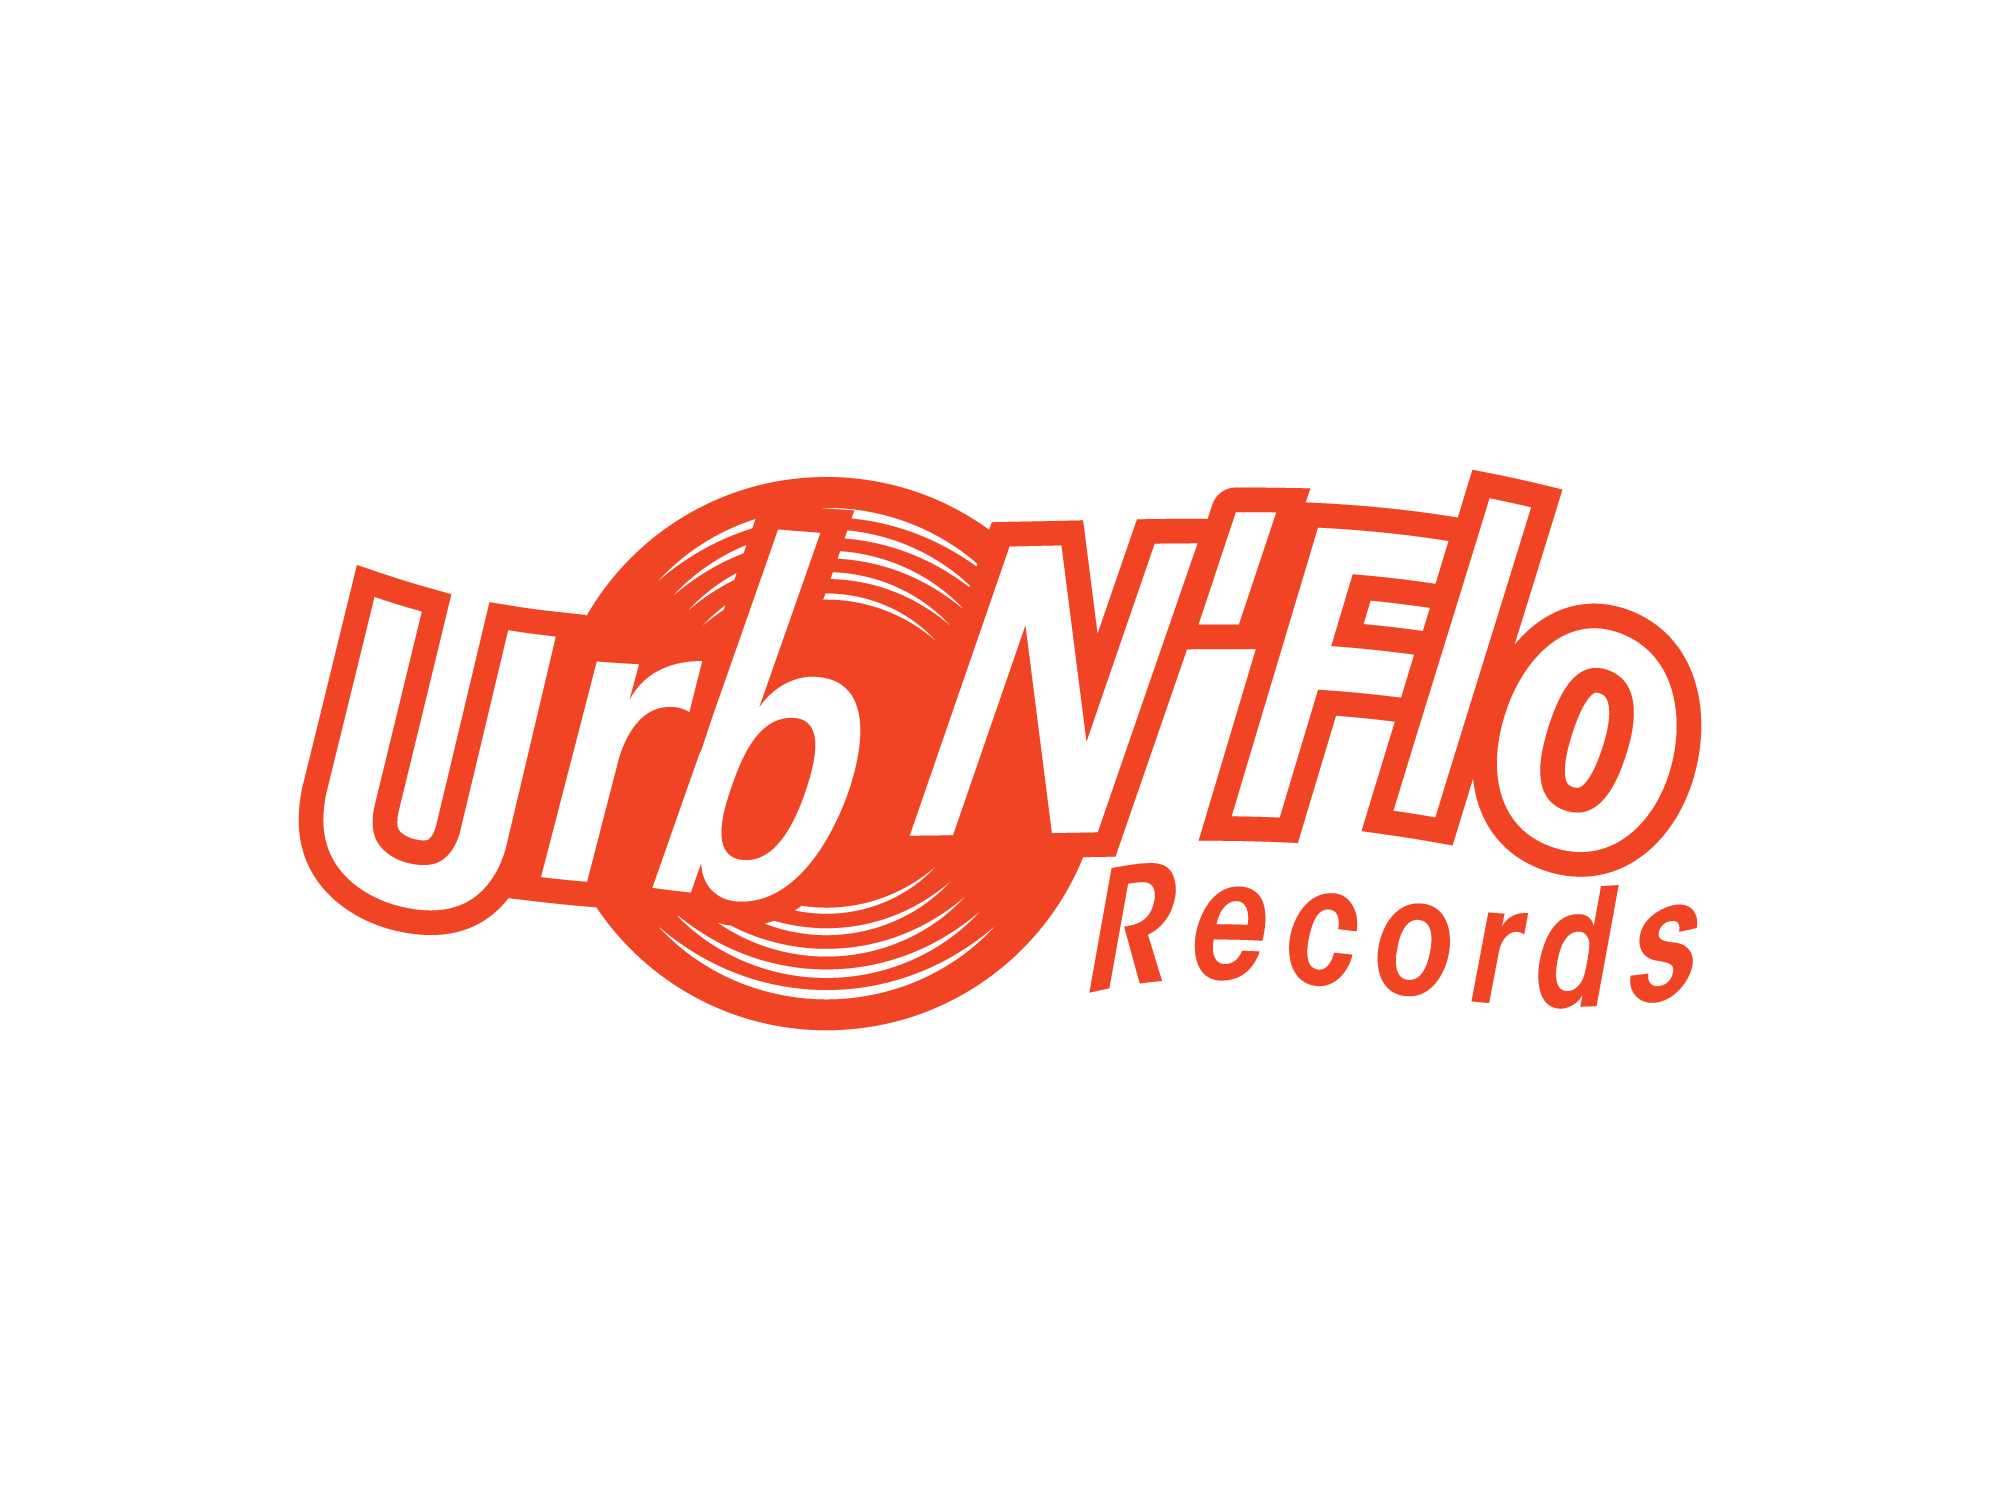 Urb N' Flo Records